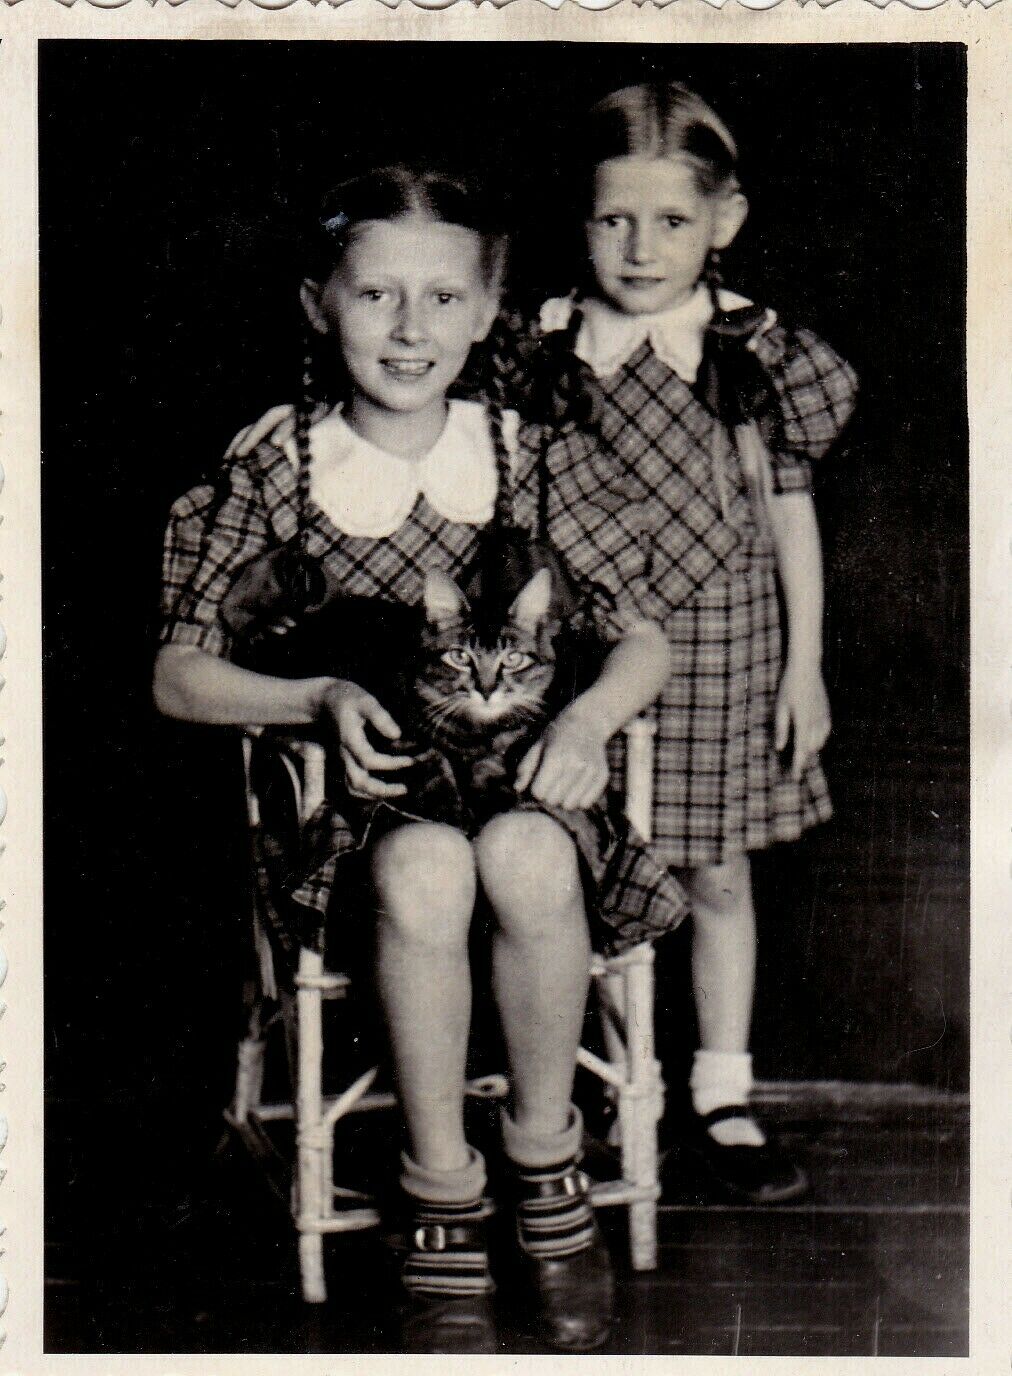 1955-Cute-little-girls-pigtails-braids-cat-pet.jpg